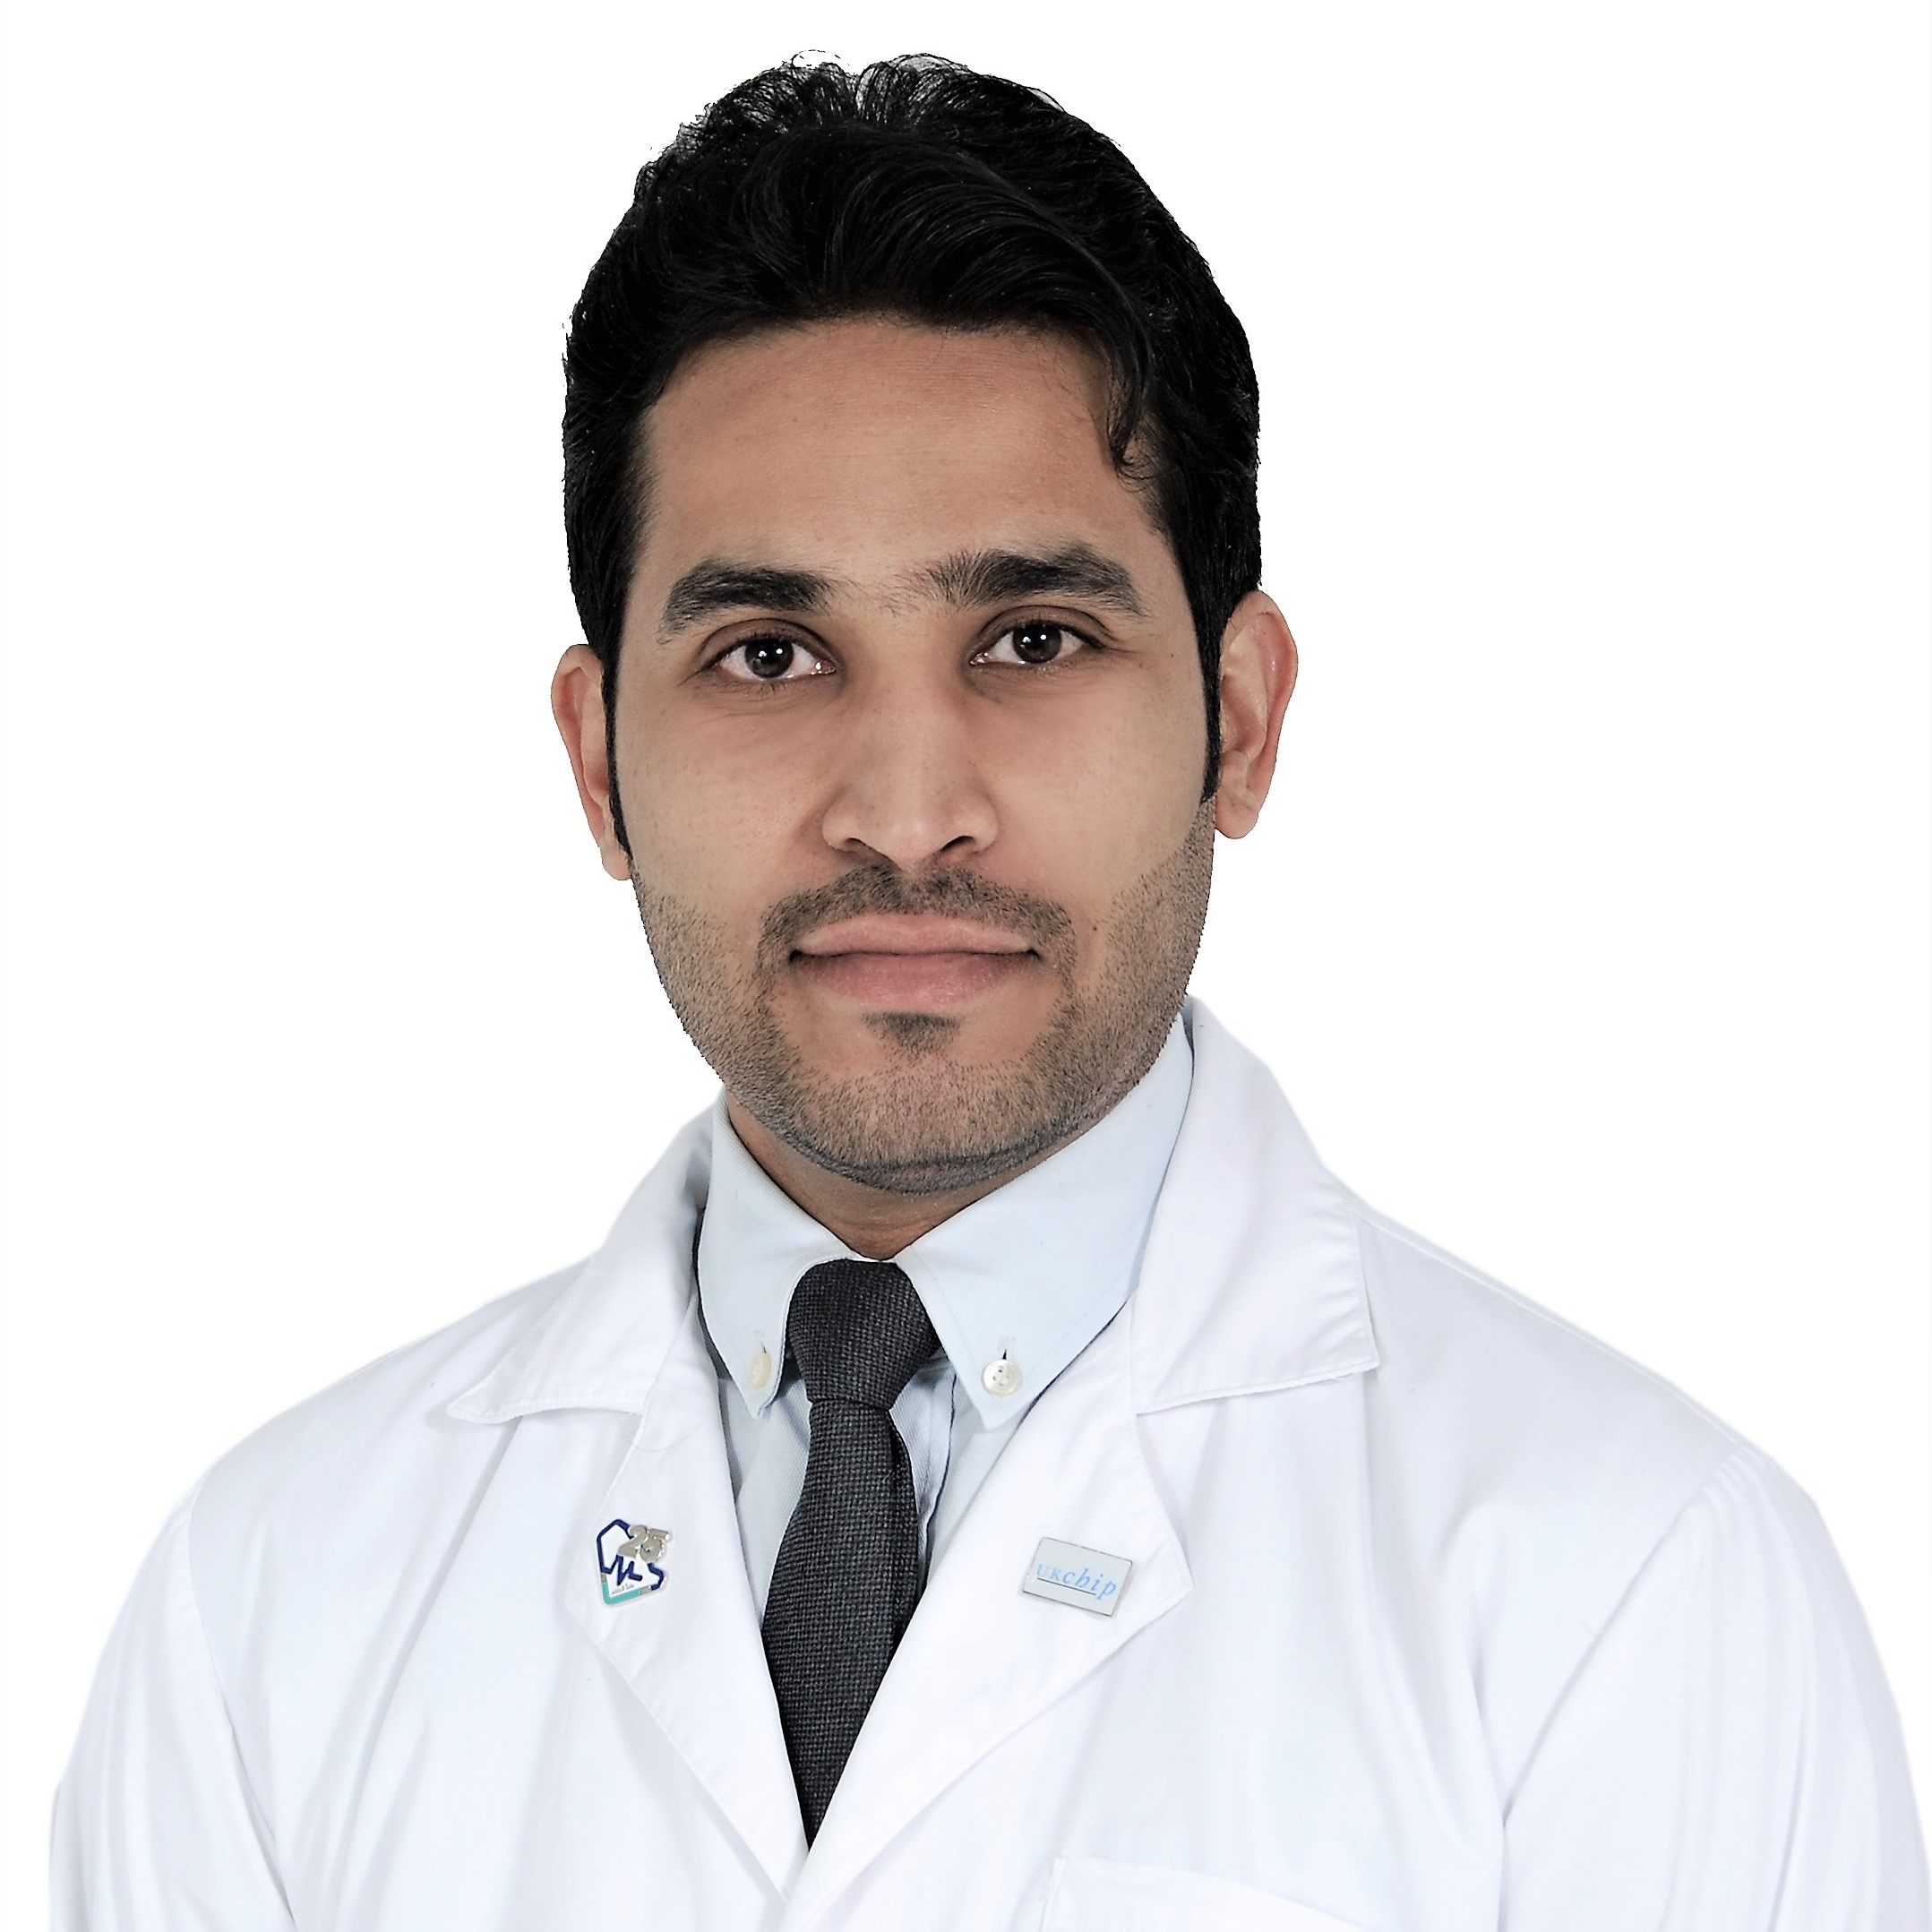 Dr. Mohammed Alhefzi